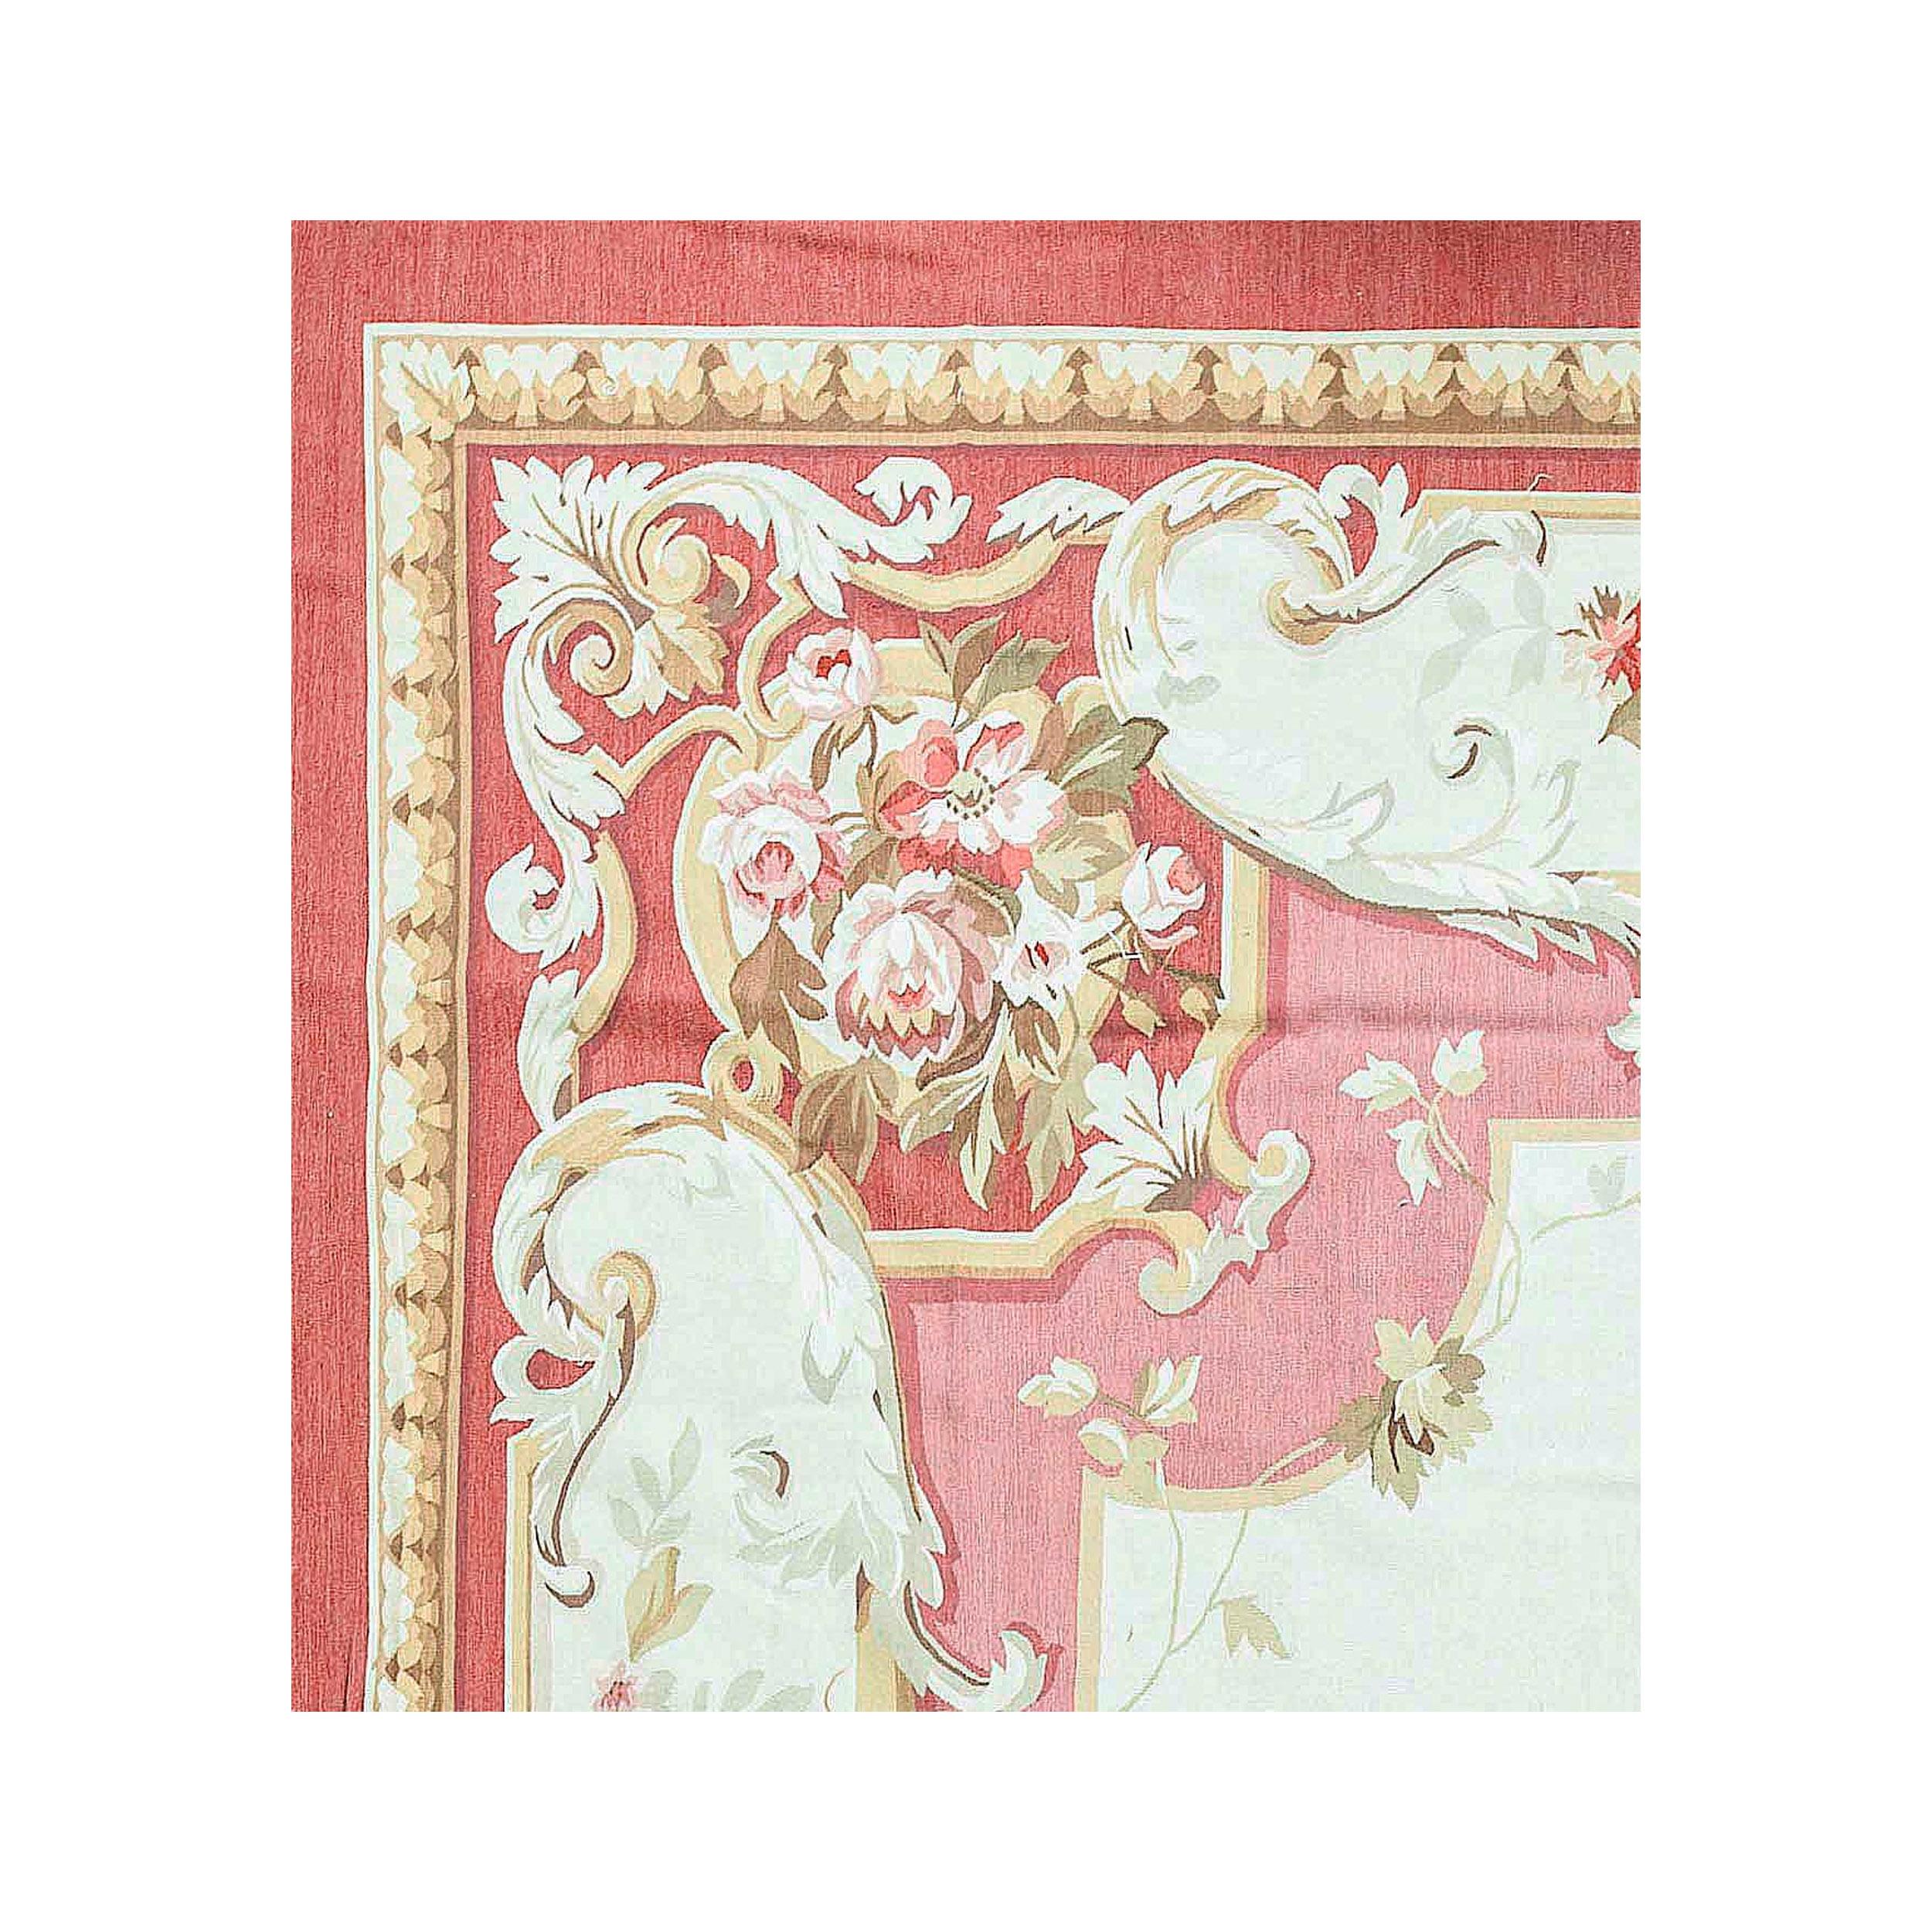 Luxuriöse handgewebte Nachbildungen der klassischen französischen Flachgewebe-Aubusson-Teppiche, die seit dem späten 17. Jahrhundert in den feinsten Häusern und Palästen zu finden sind. Das an den Ufern der Creuse in Frankreich gelegene Aubusson ist